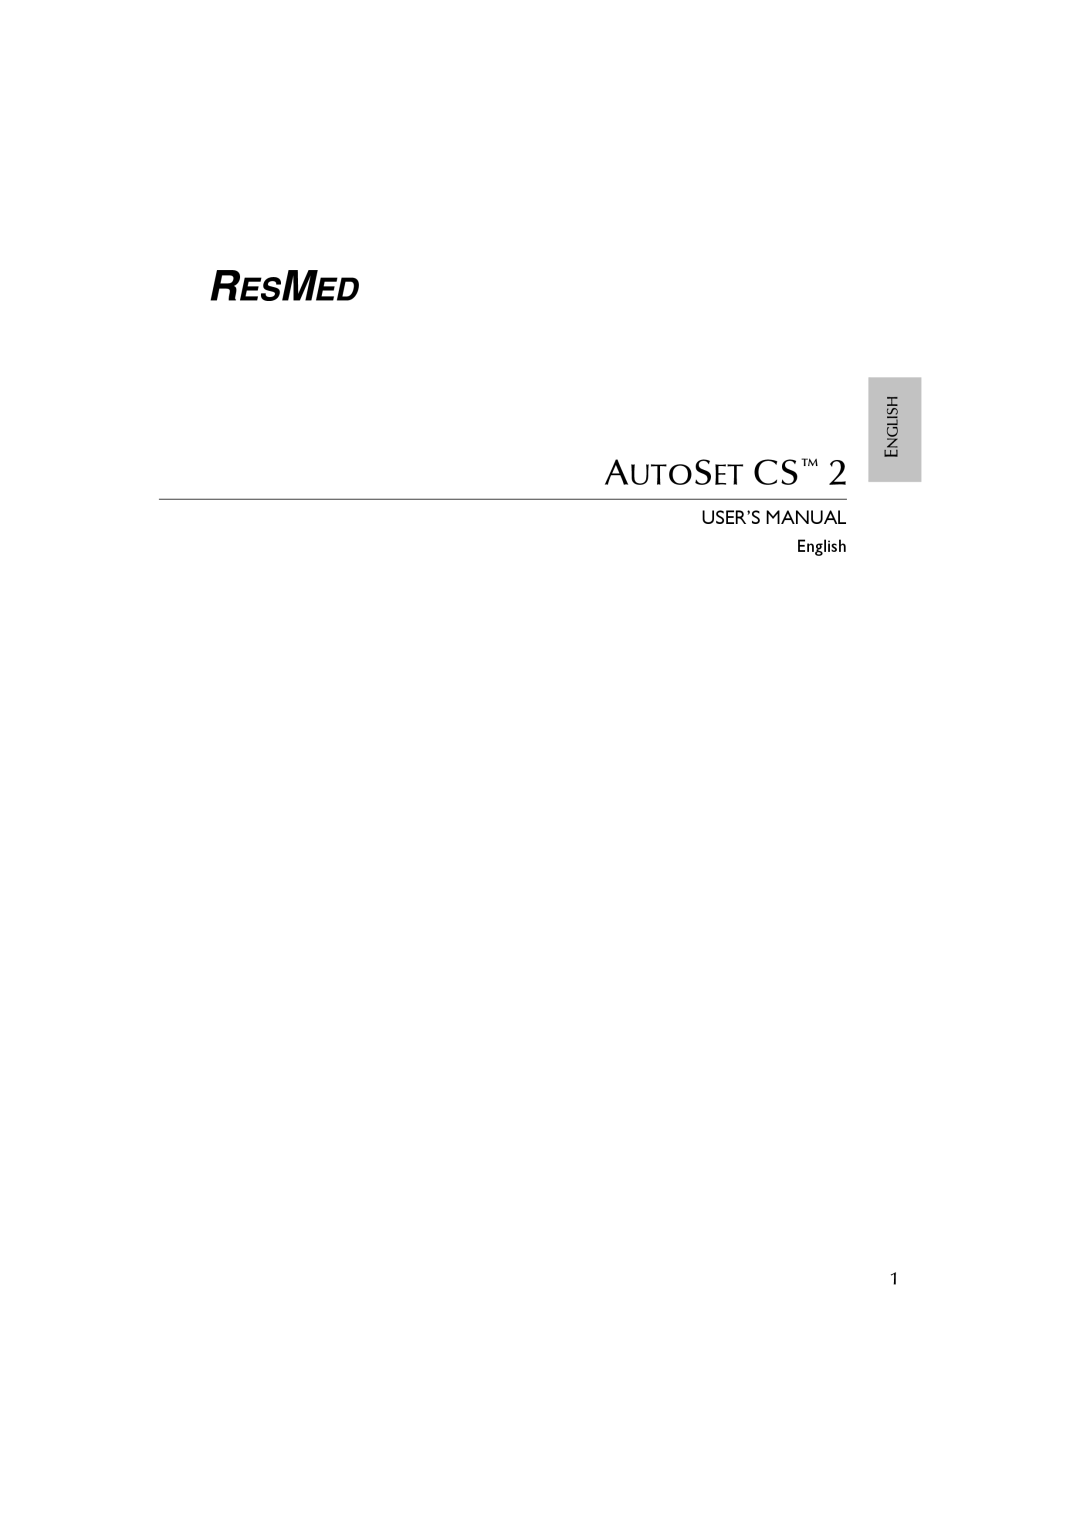 ResMed AutoSet CS 2 user manual Autoset Cs, User’S Manual 